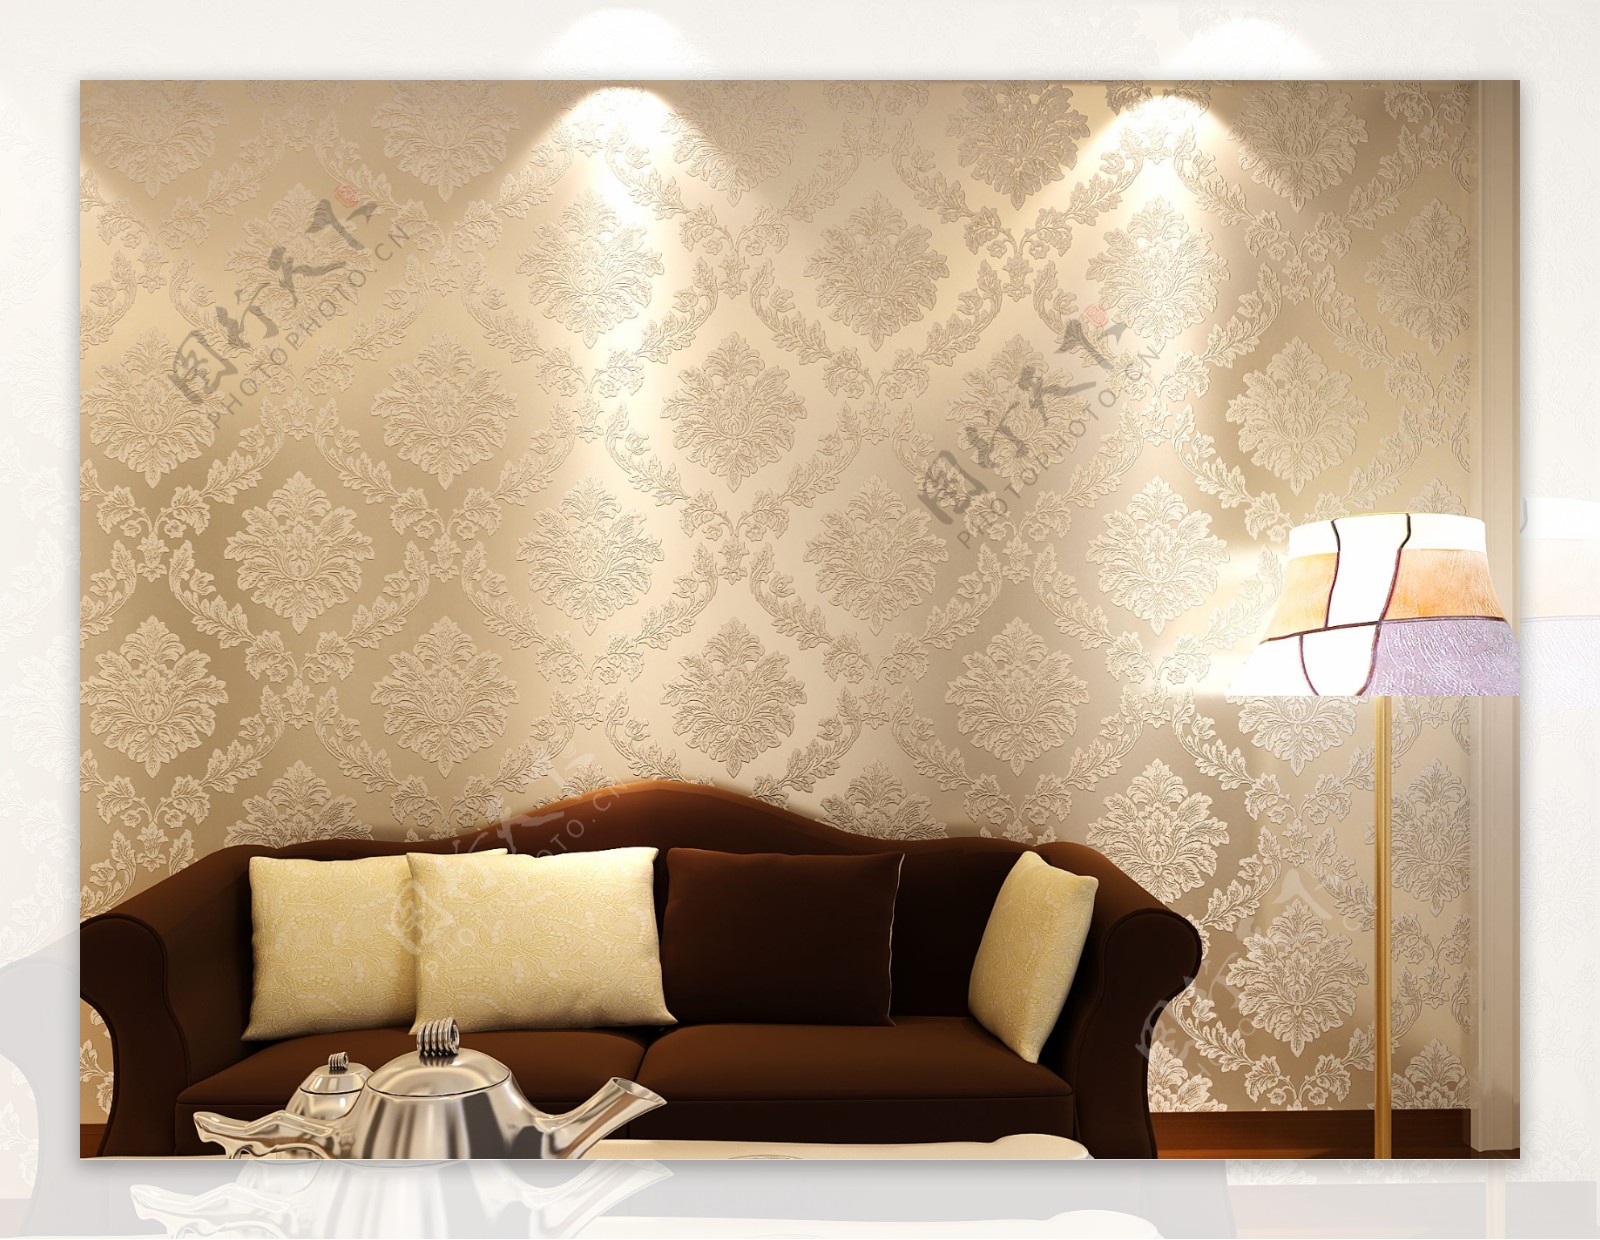 亮银米色欧式沙发背景墙纸图片